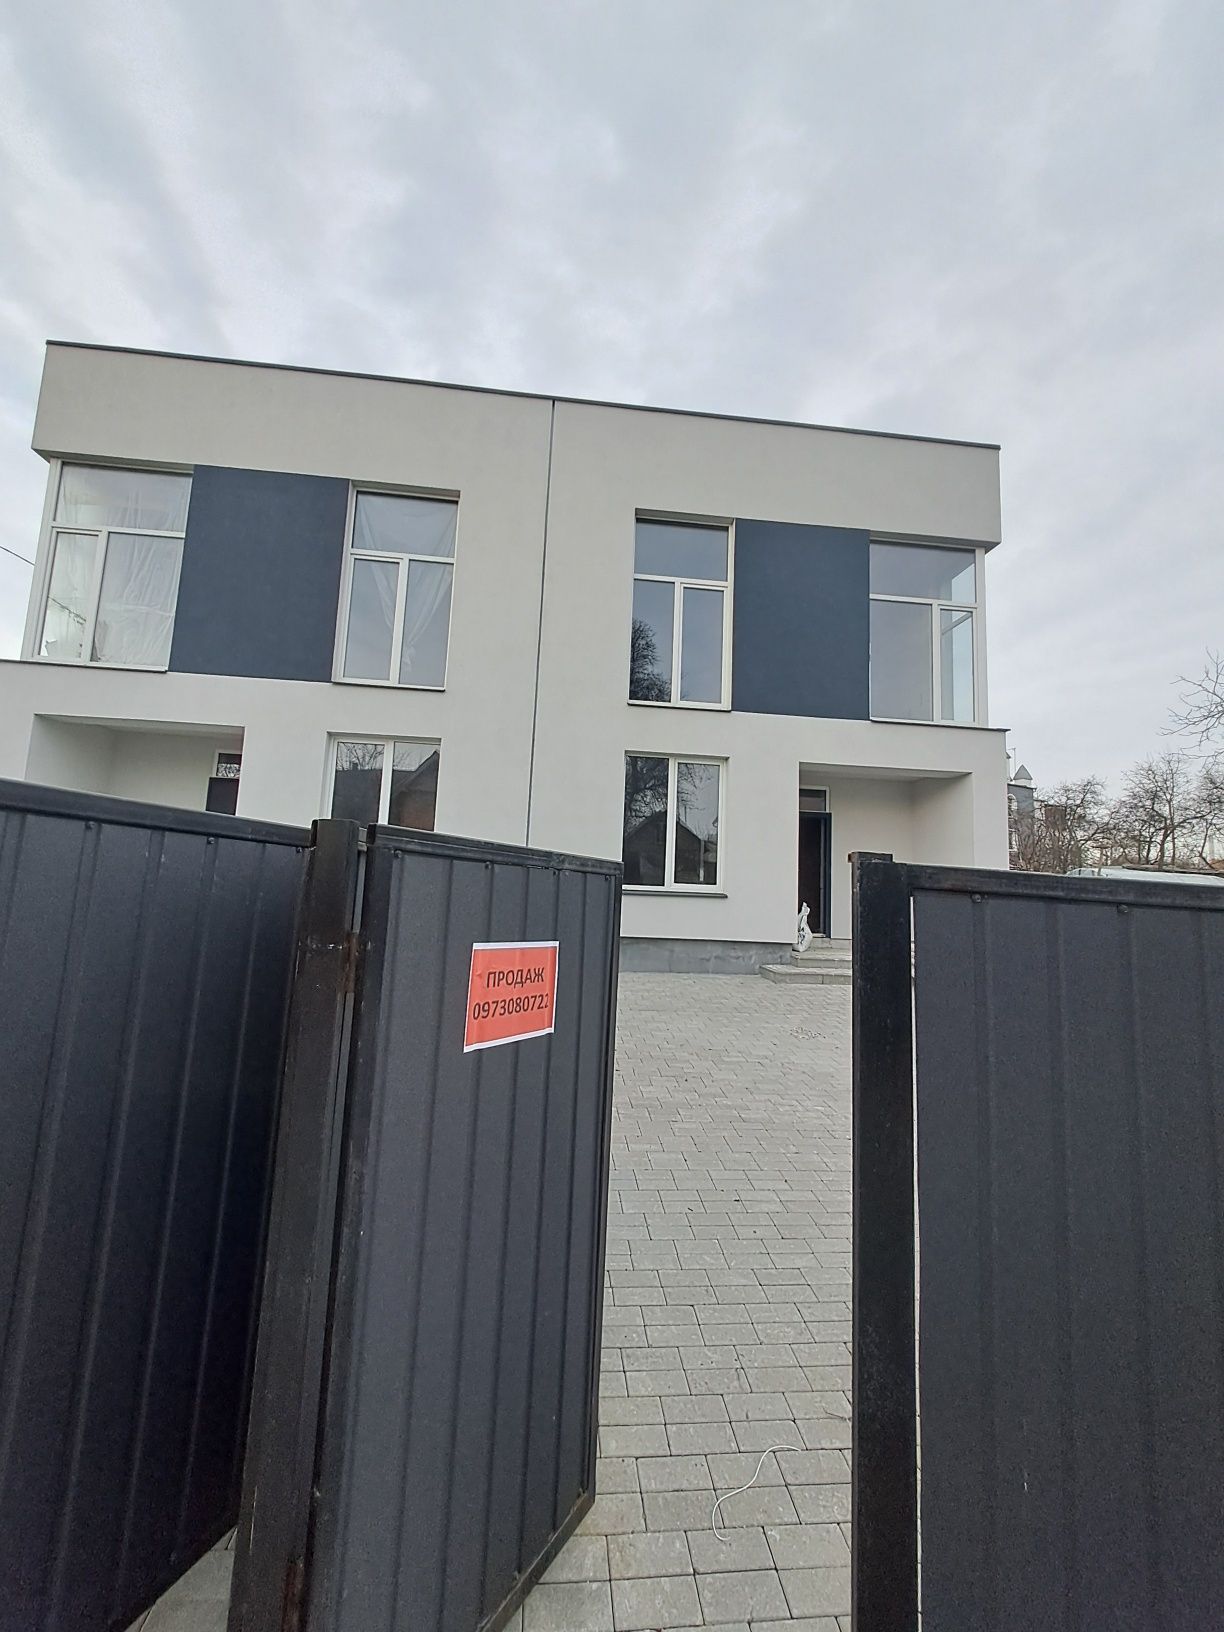 Продаж будинку в Пасіках Зубрицьких  площею 138 м кв,  площа ділянки 3